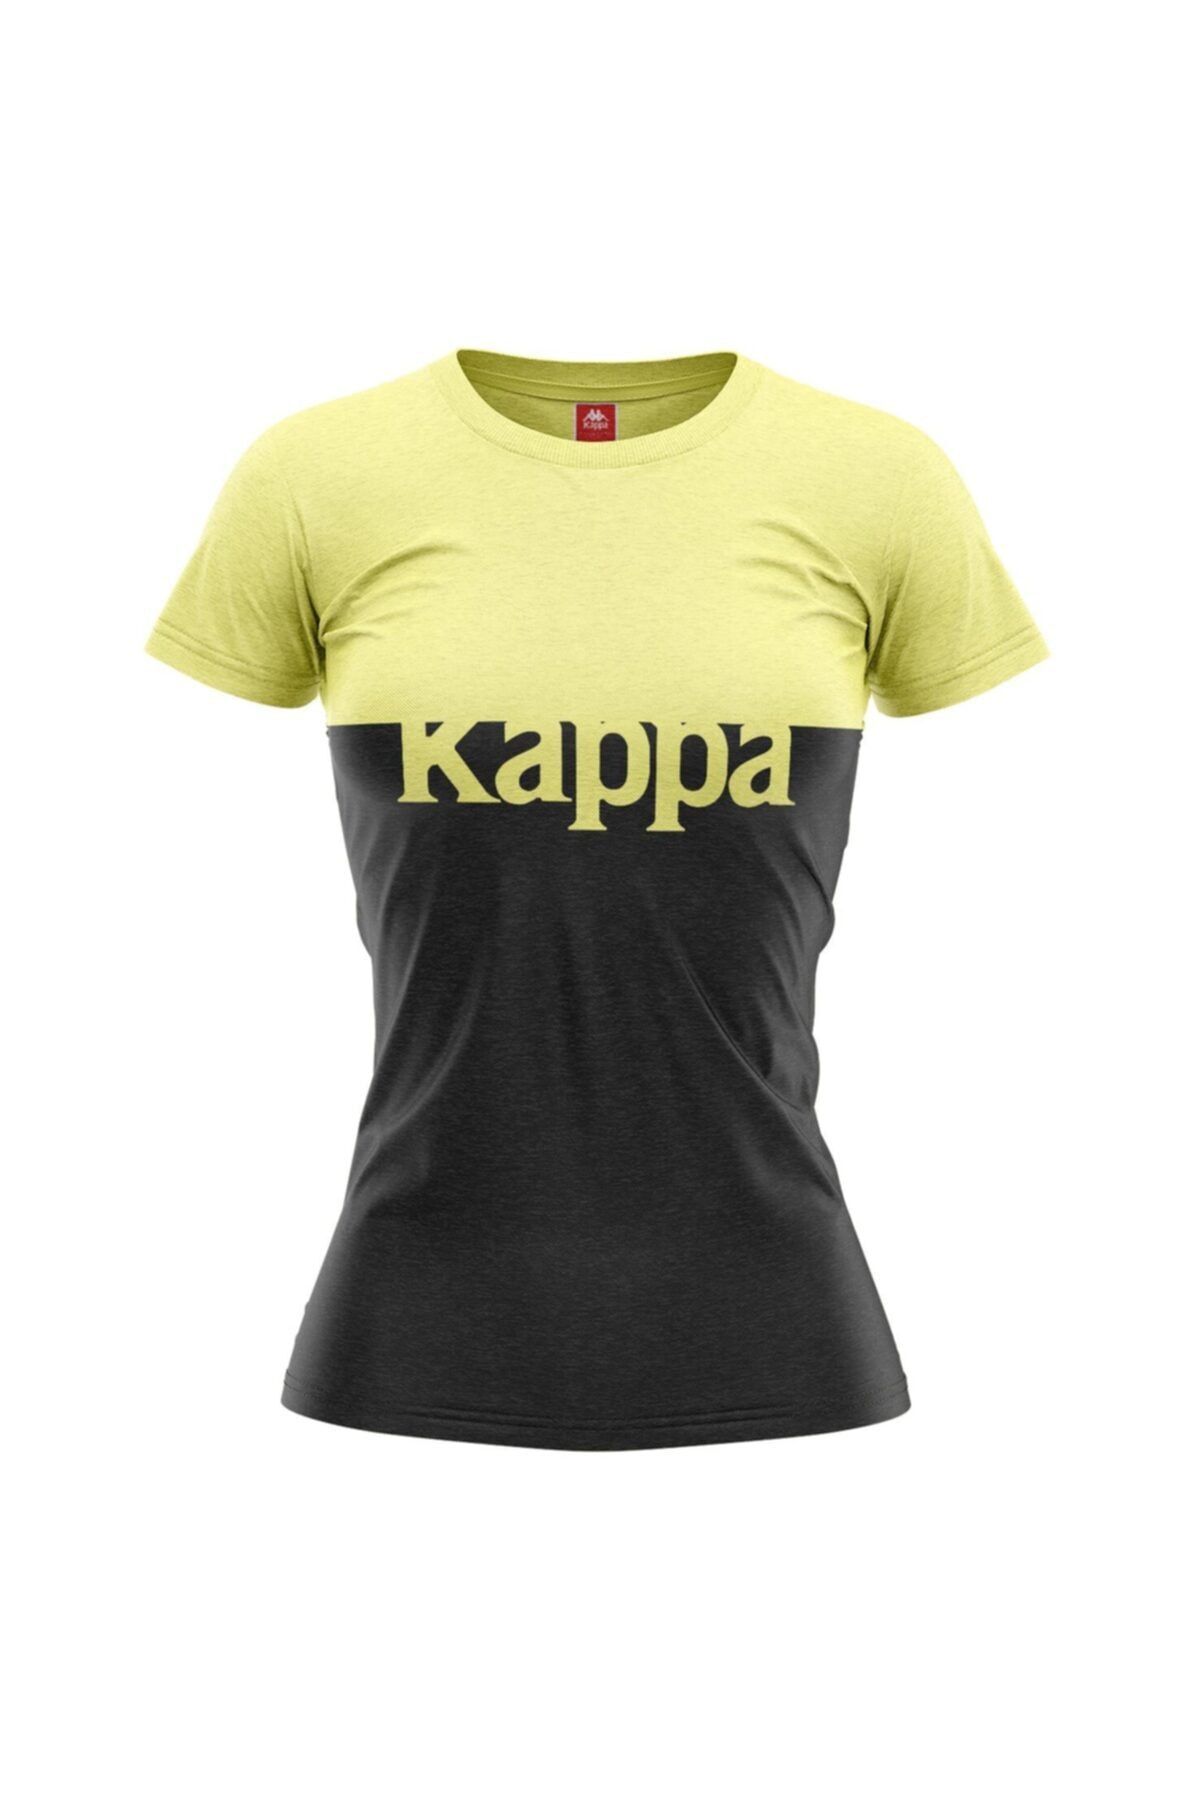 Kappa Kadın Baskılı T-shirt Batız Açık Sarı